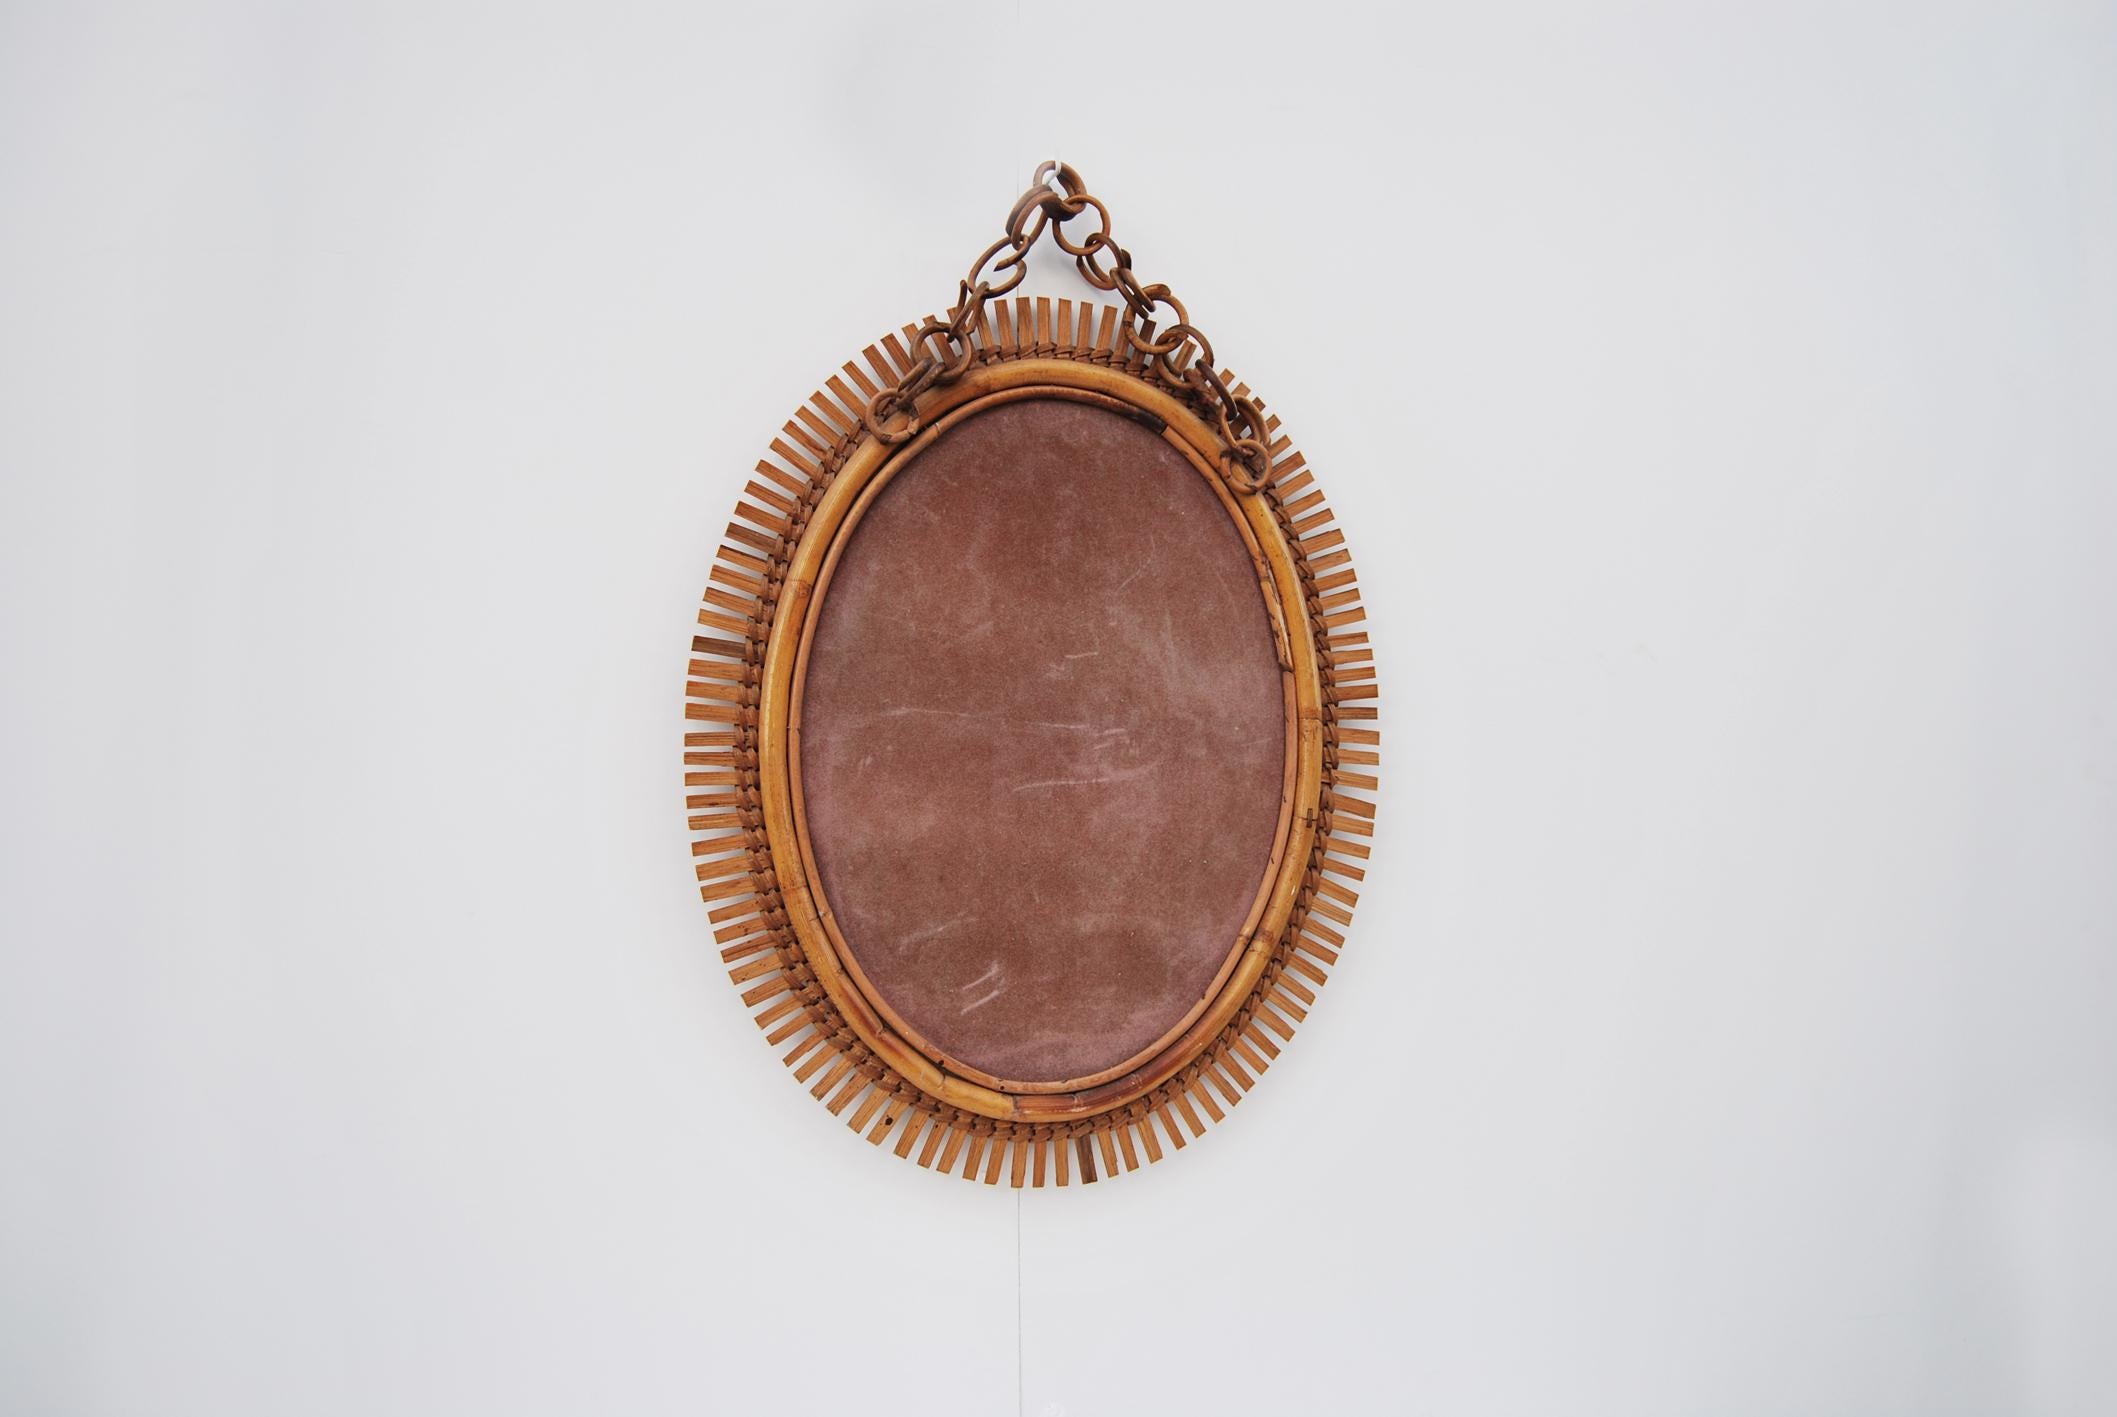 Ovaler Spiegel aus Bambus, hergestellt in Italien, 1960er Jahre. 
Eleganter ovaler Wandspiegel mit Rattankette. Der Zustand ist ausgezeichnet, da er die verwitterte Patina der Zeit bewahrt hat. 
Der Preis für den Versand ist für das italienische